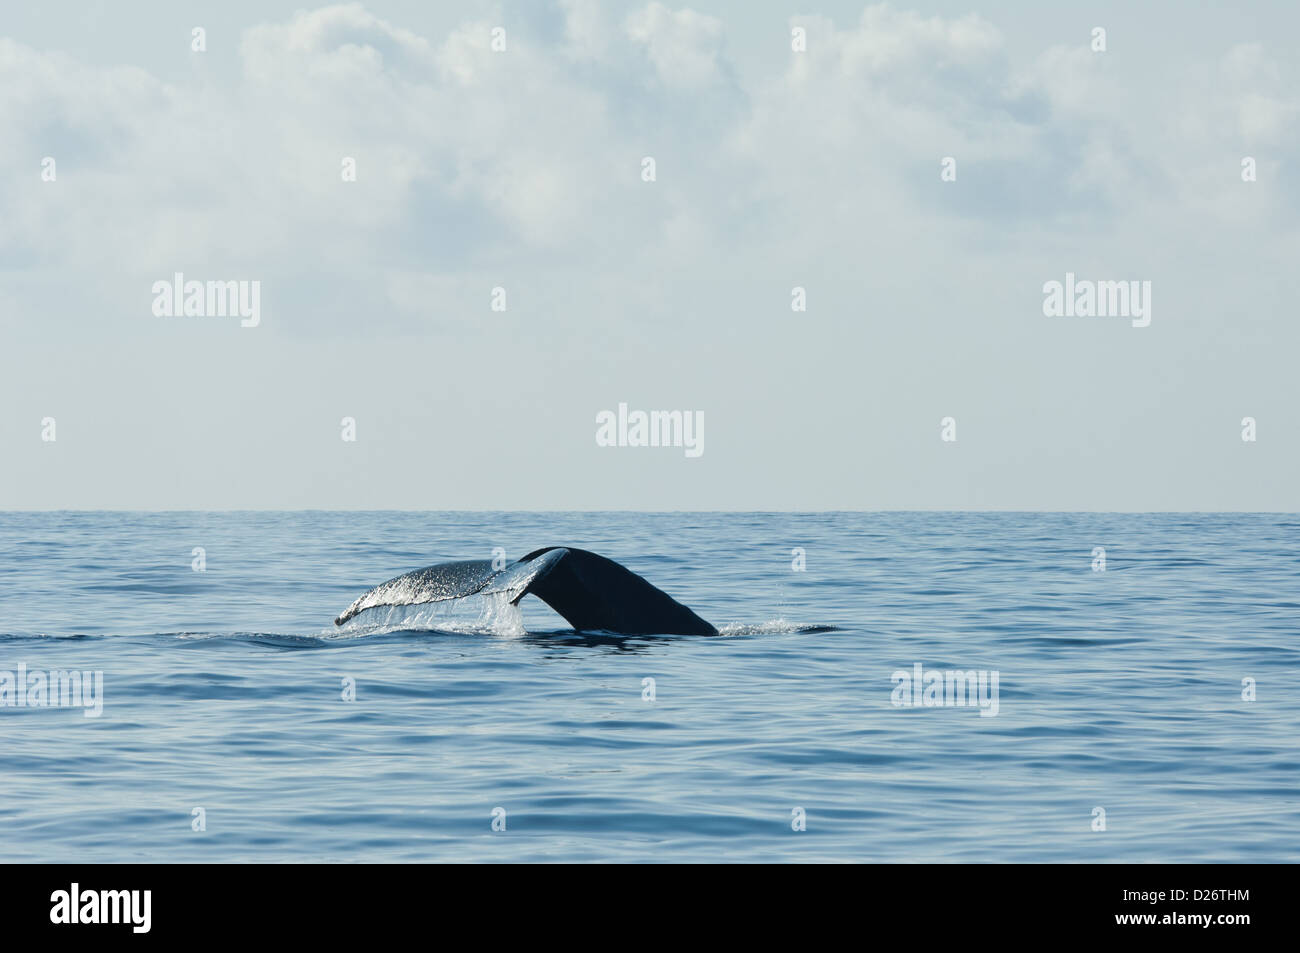 Humpback whale (Megaptera novaeangliae) fluke near Maui, Hawaii Stock Photo